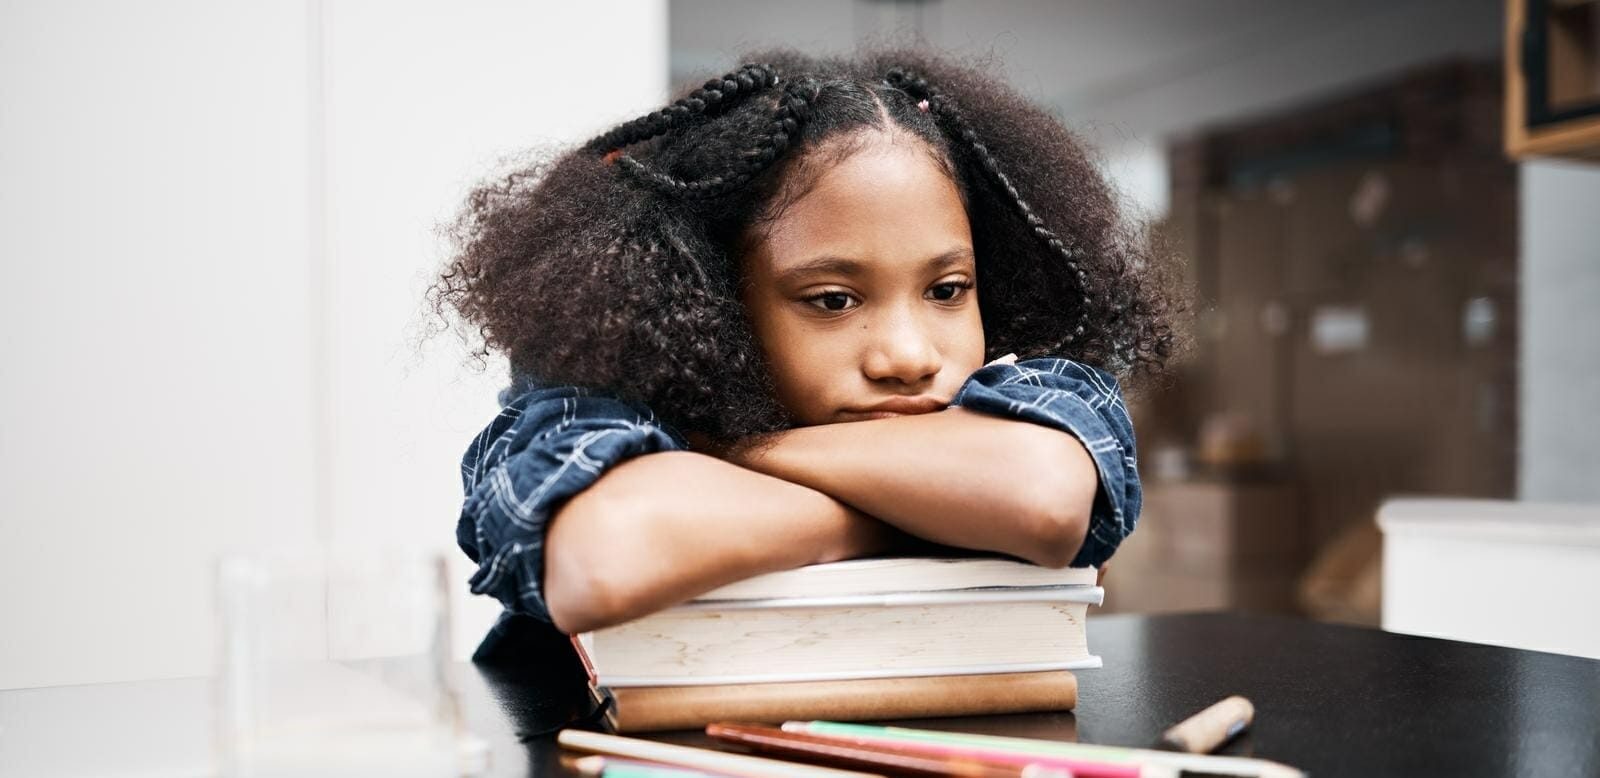 Criança apoiada em cima de uma pilha de livros com expressão triste e desanimada no rosto